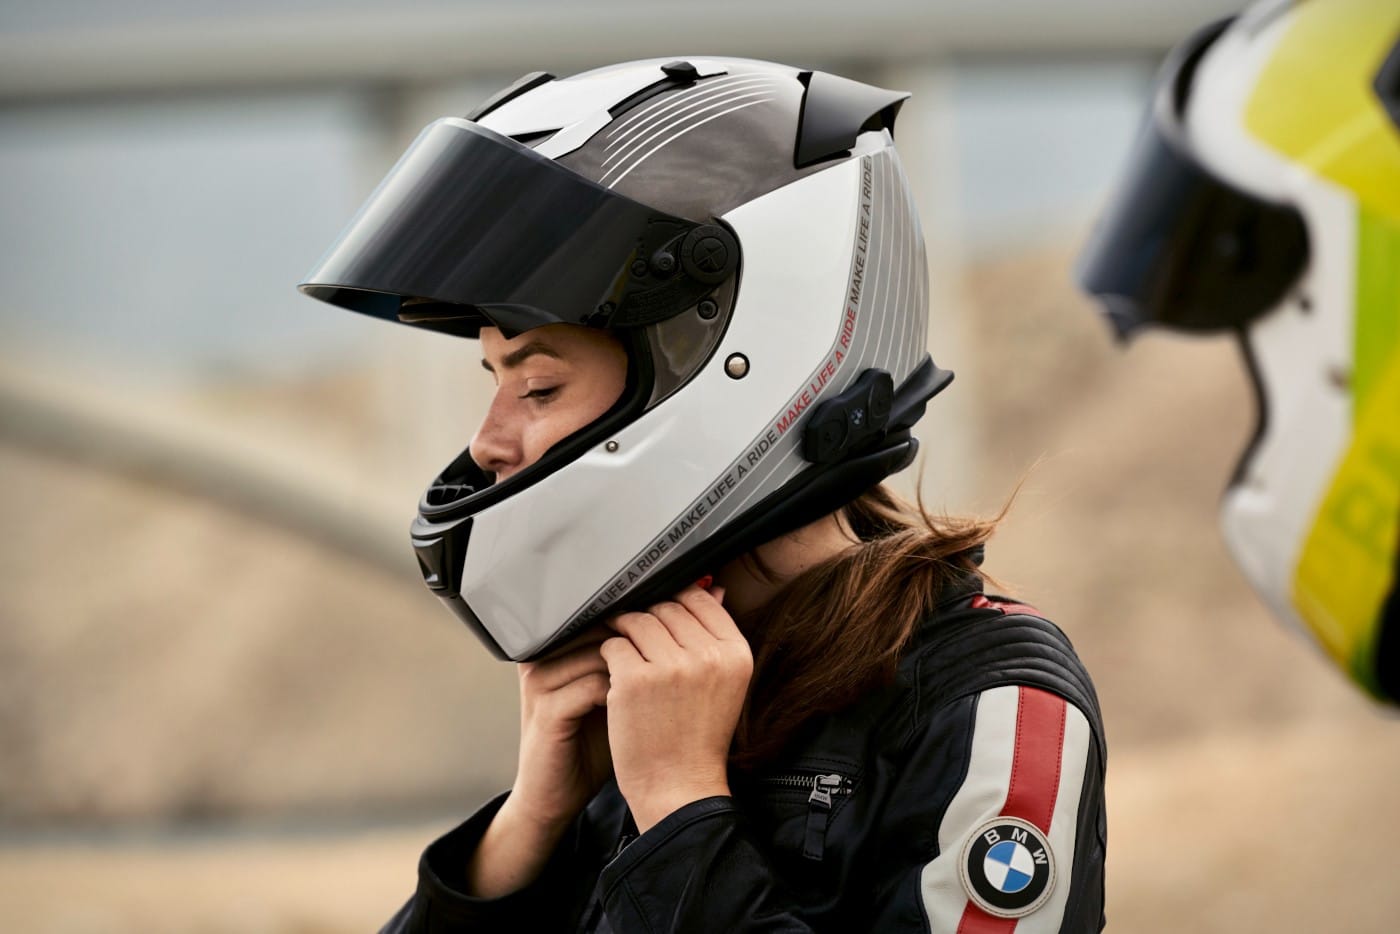 Elige un casco moto se adecúa a tu y viaja más seguro